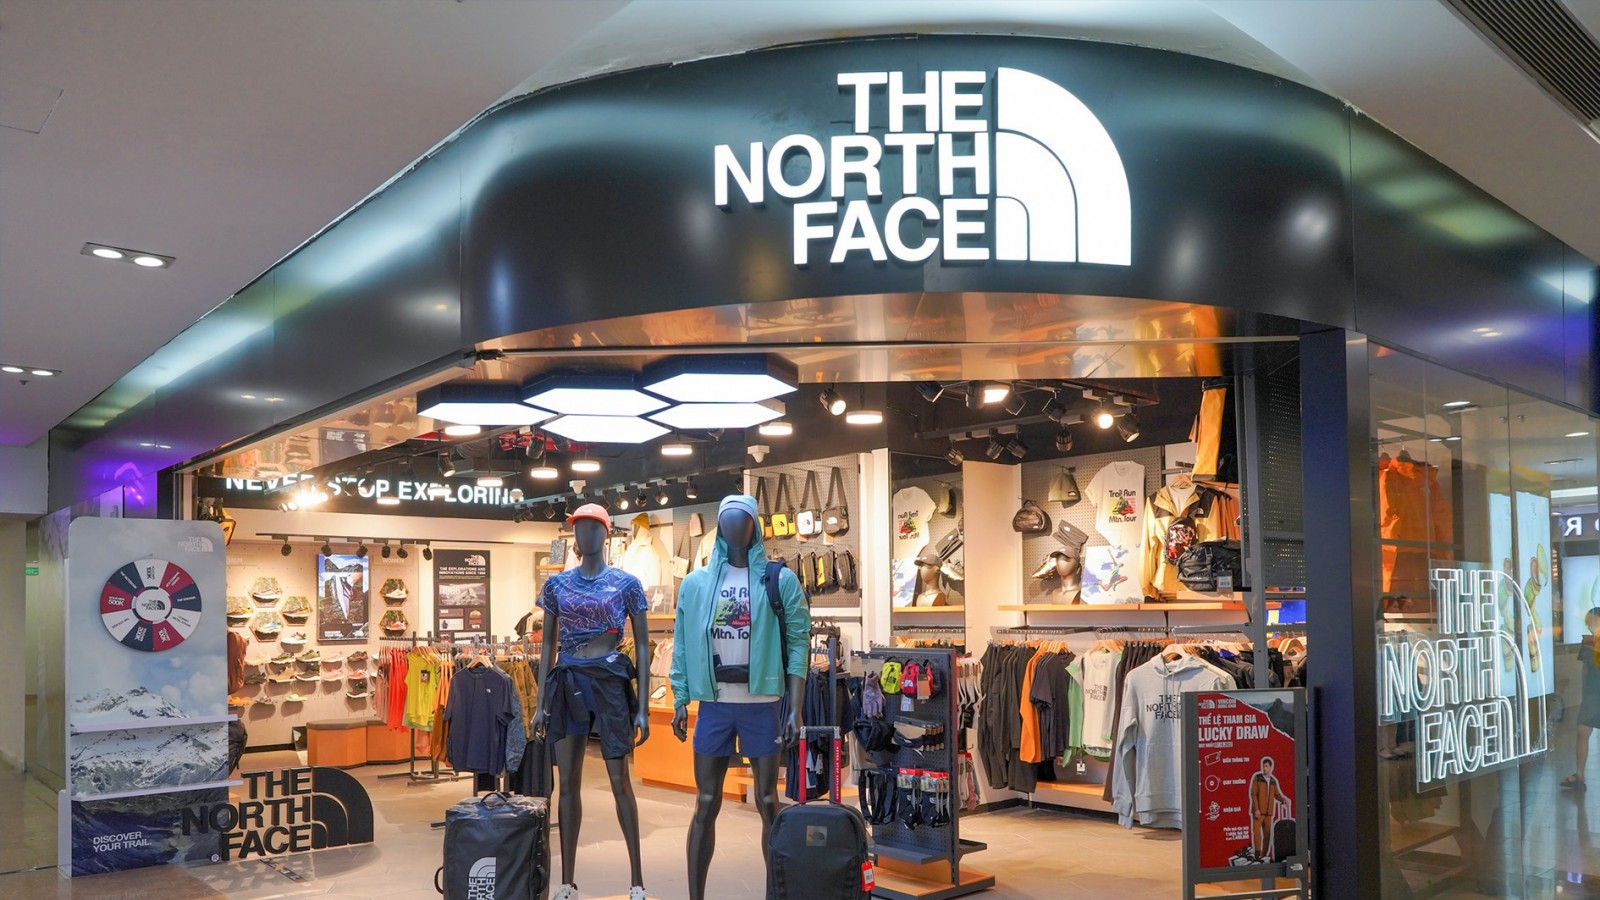 Hiện chỉ còn 3 gian hàng The North Face hoạt động tại Việt Nam